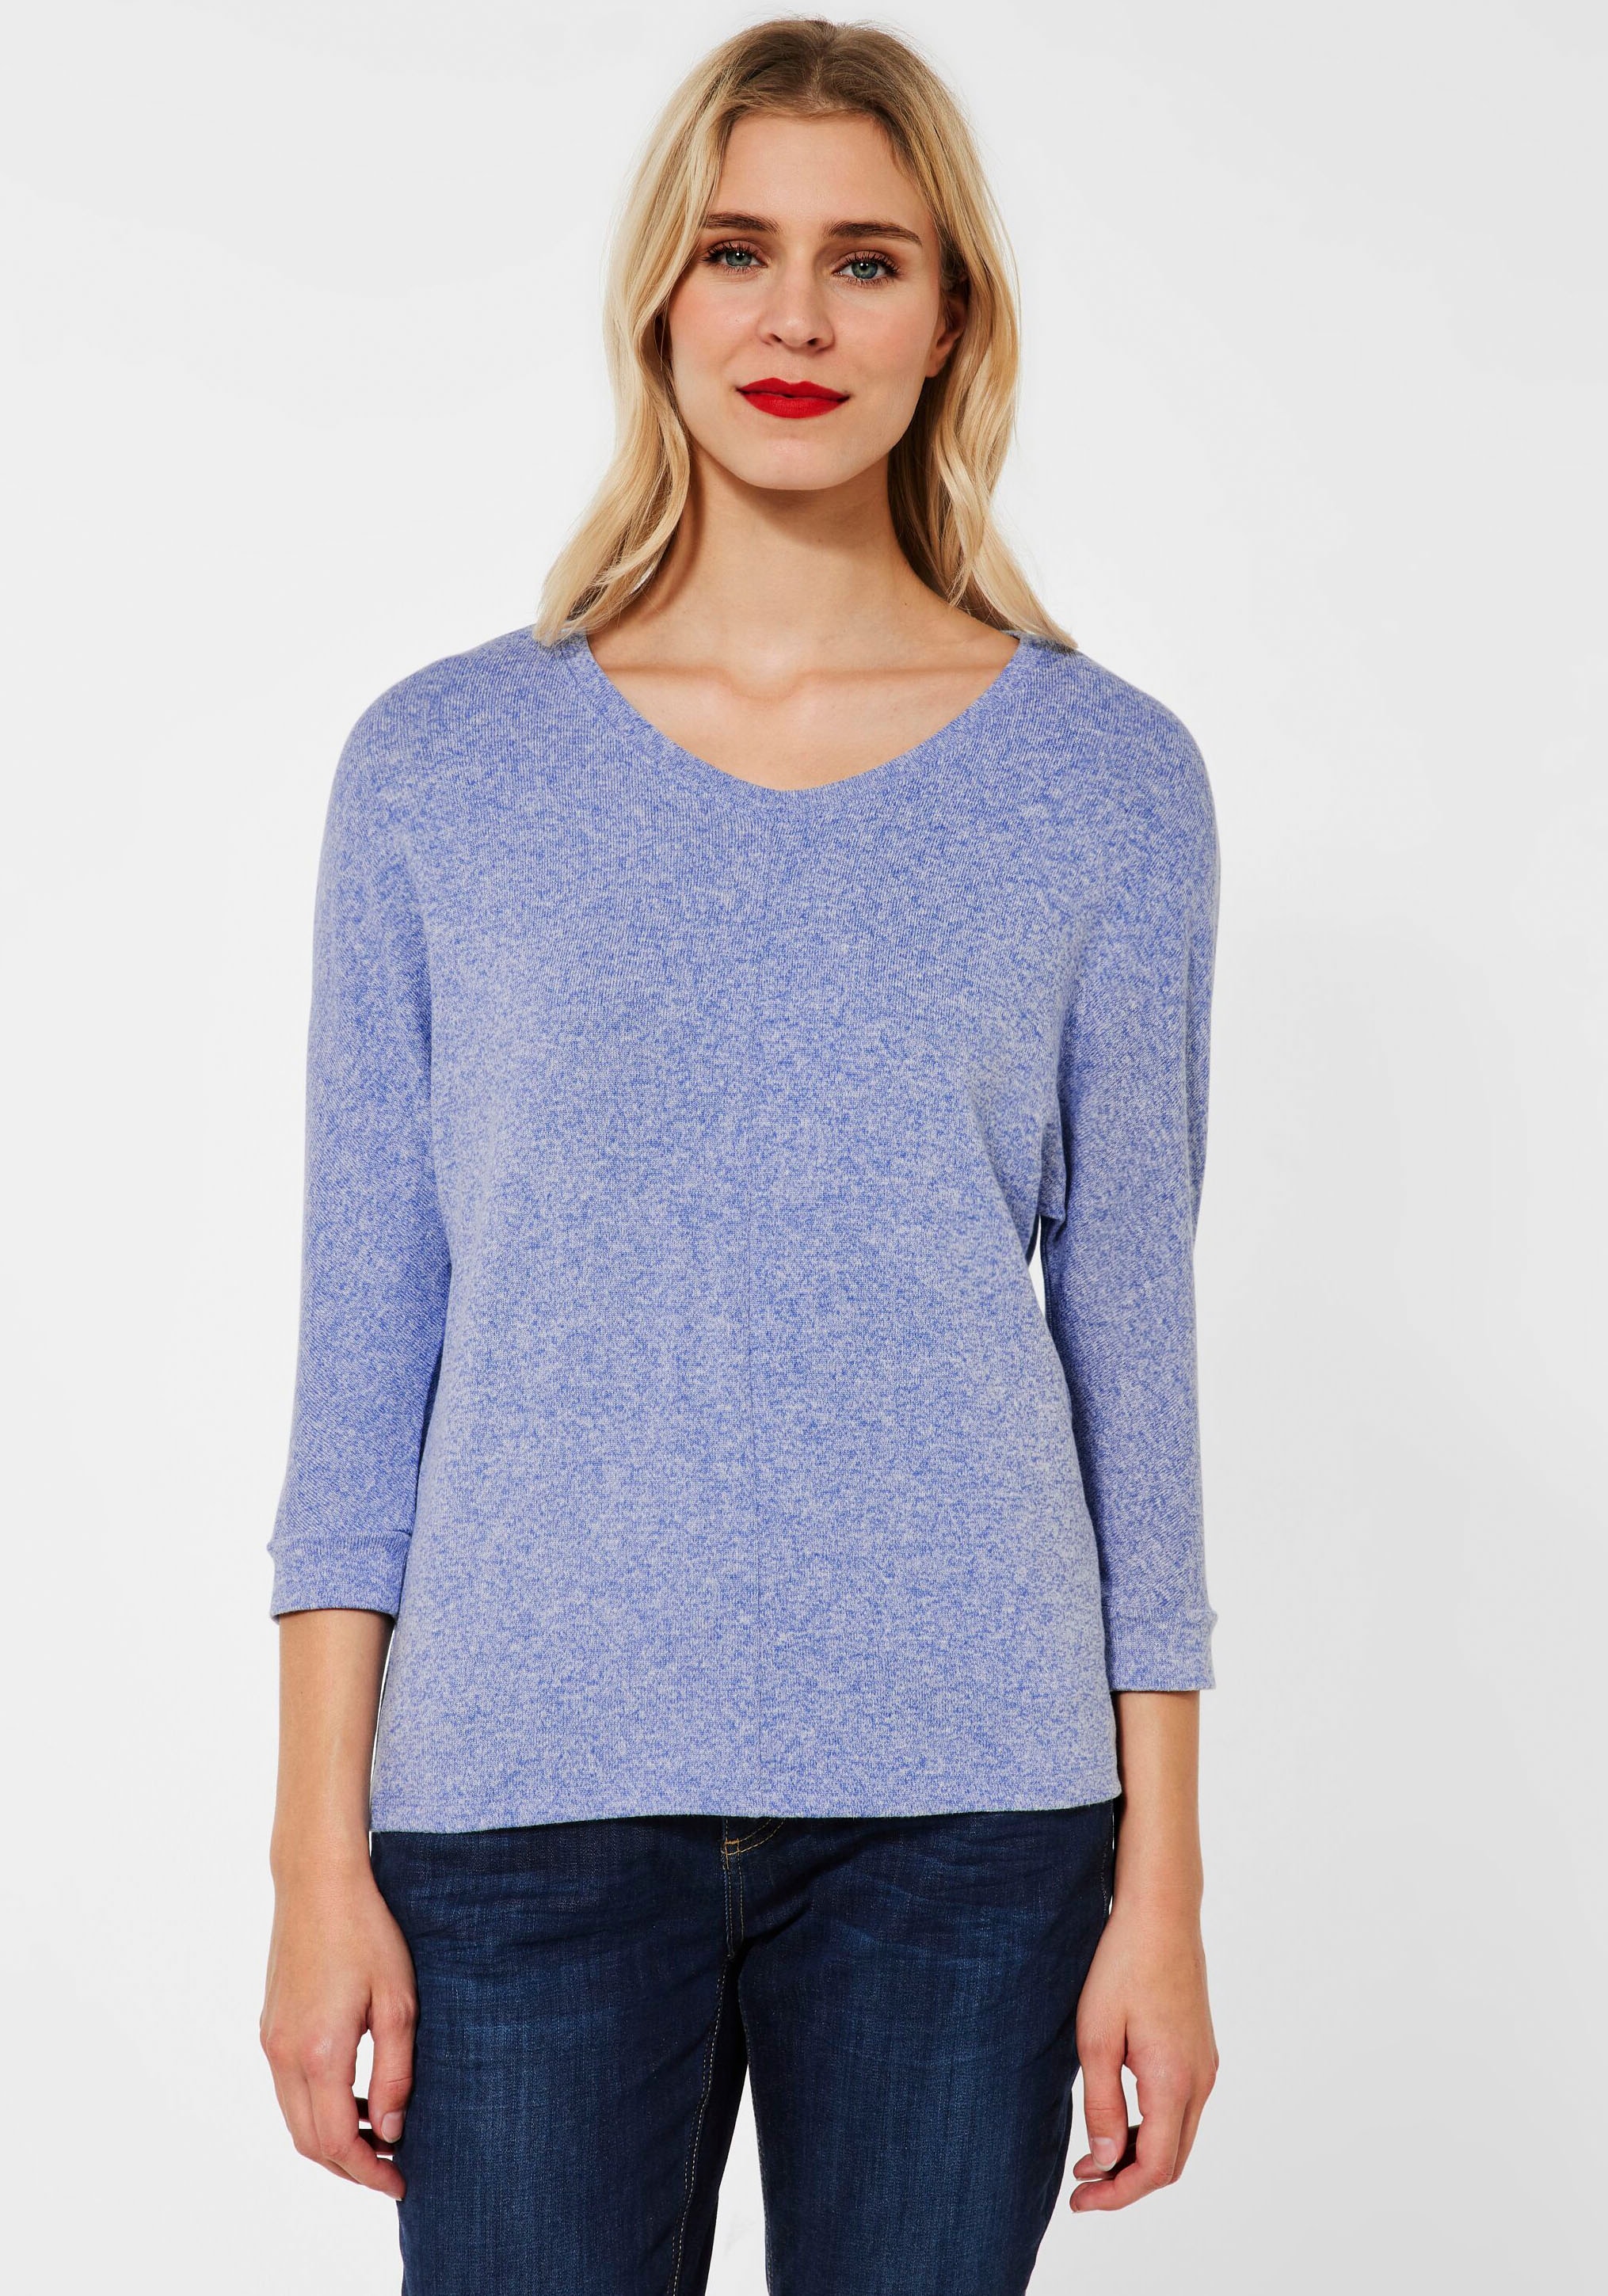 Melange-Optik | STREET ONE kaufen »Style Ellen«, 3/4-Arm-Shirt in BAUR